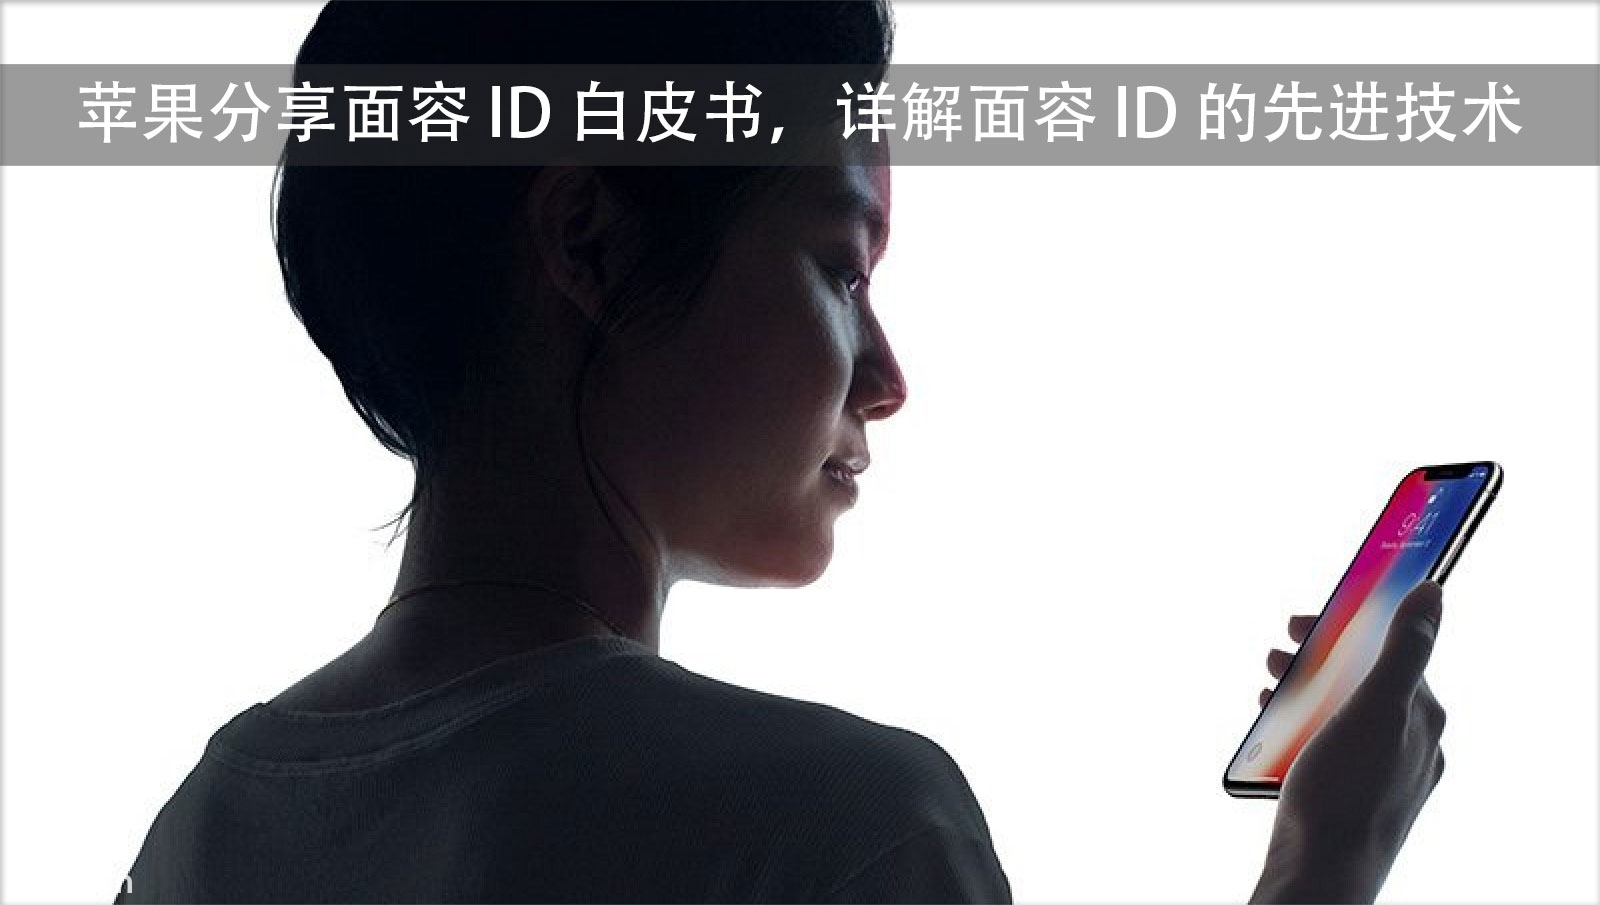 苹果分享 Face ID 白皮书，详解刷脸解锁的先进技术